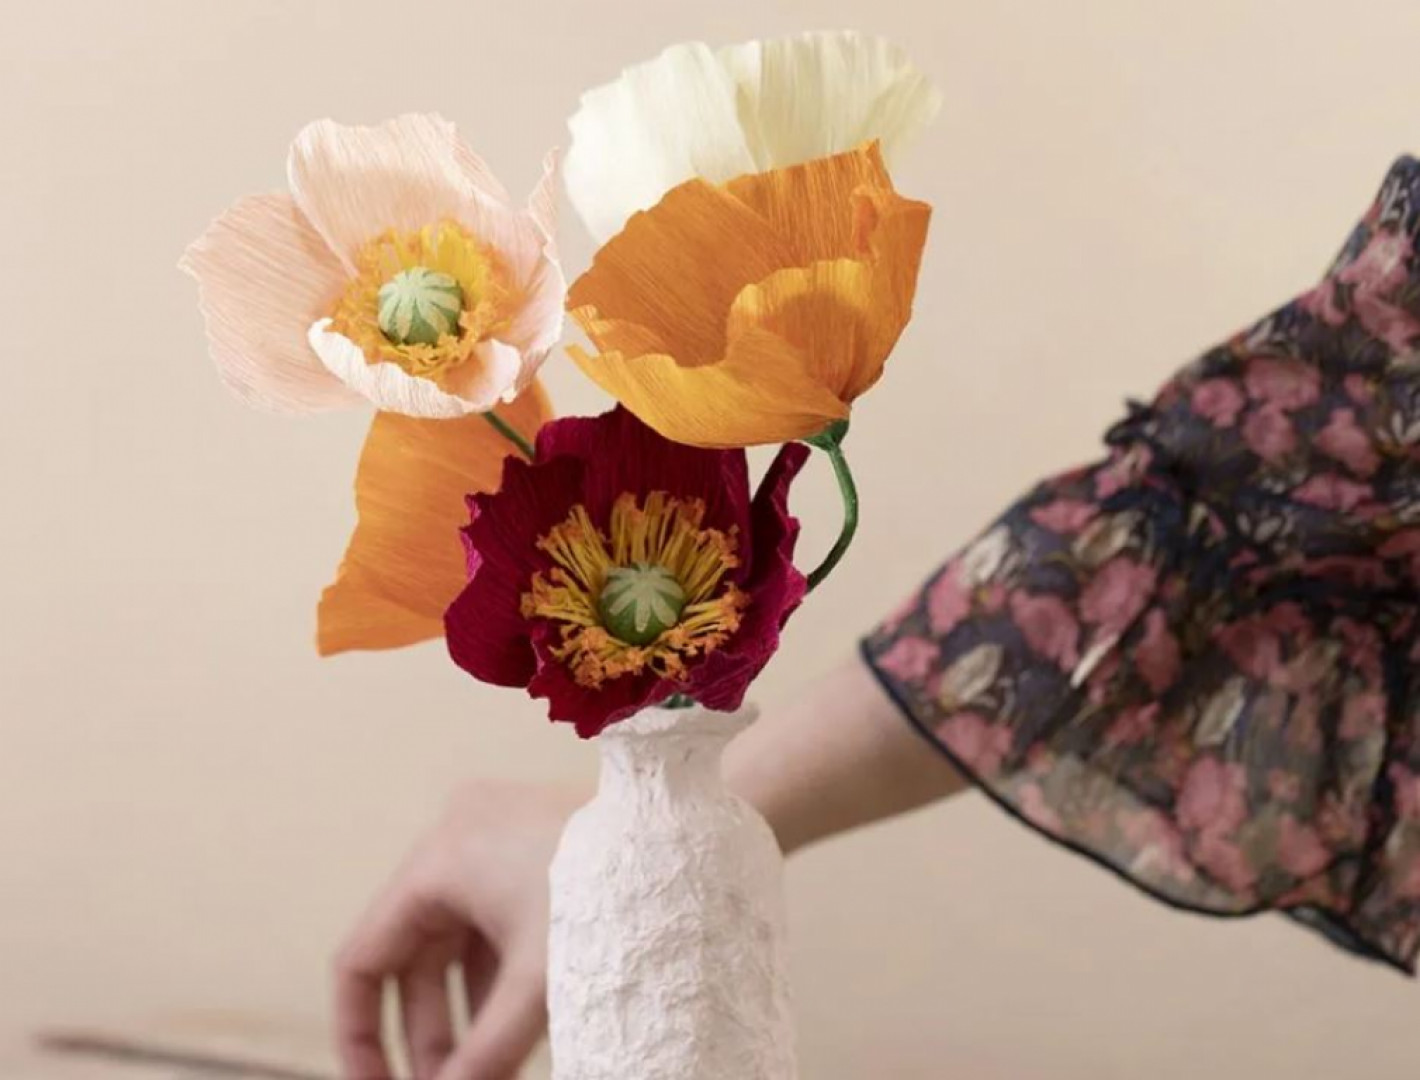 Vyrob si: Květy z krepového papíru